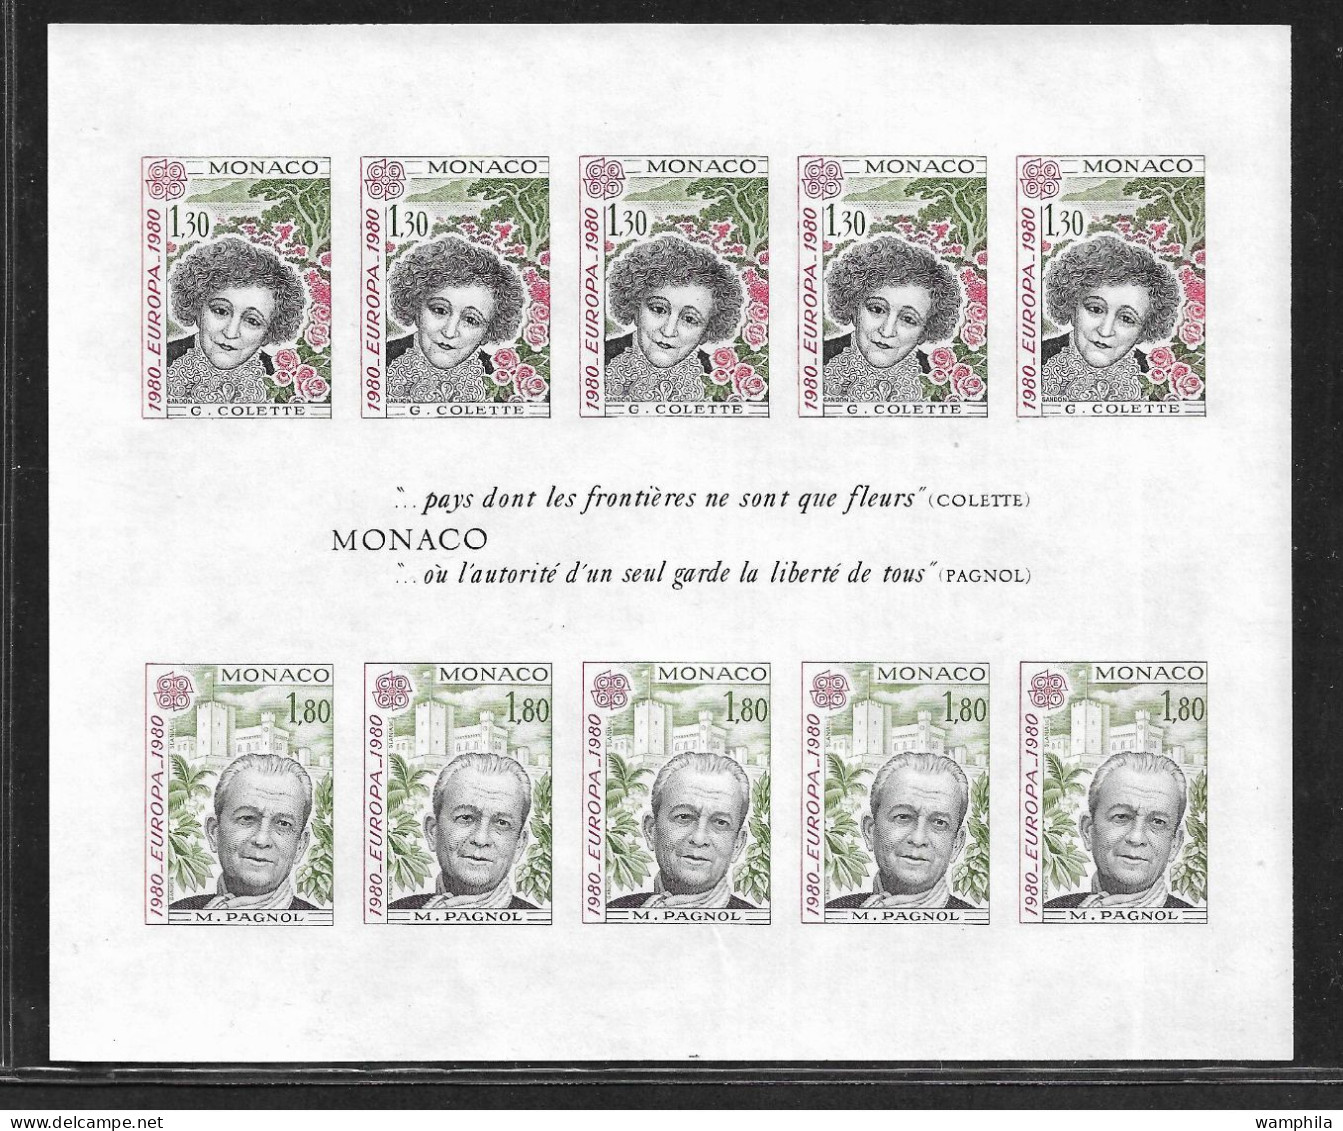 Monaco Bloc N°18a** NON Dentelé. Europa 1980 (S.G.Colette, M.Pagnol). RARE. Cote 540€ - Errors And Oddities